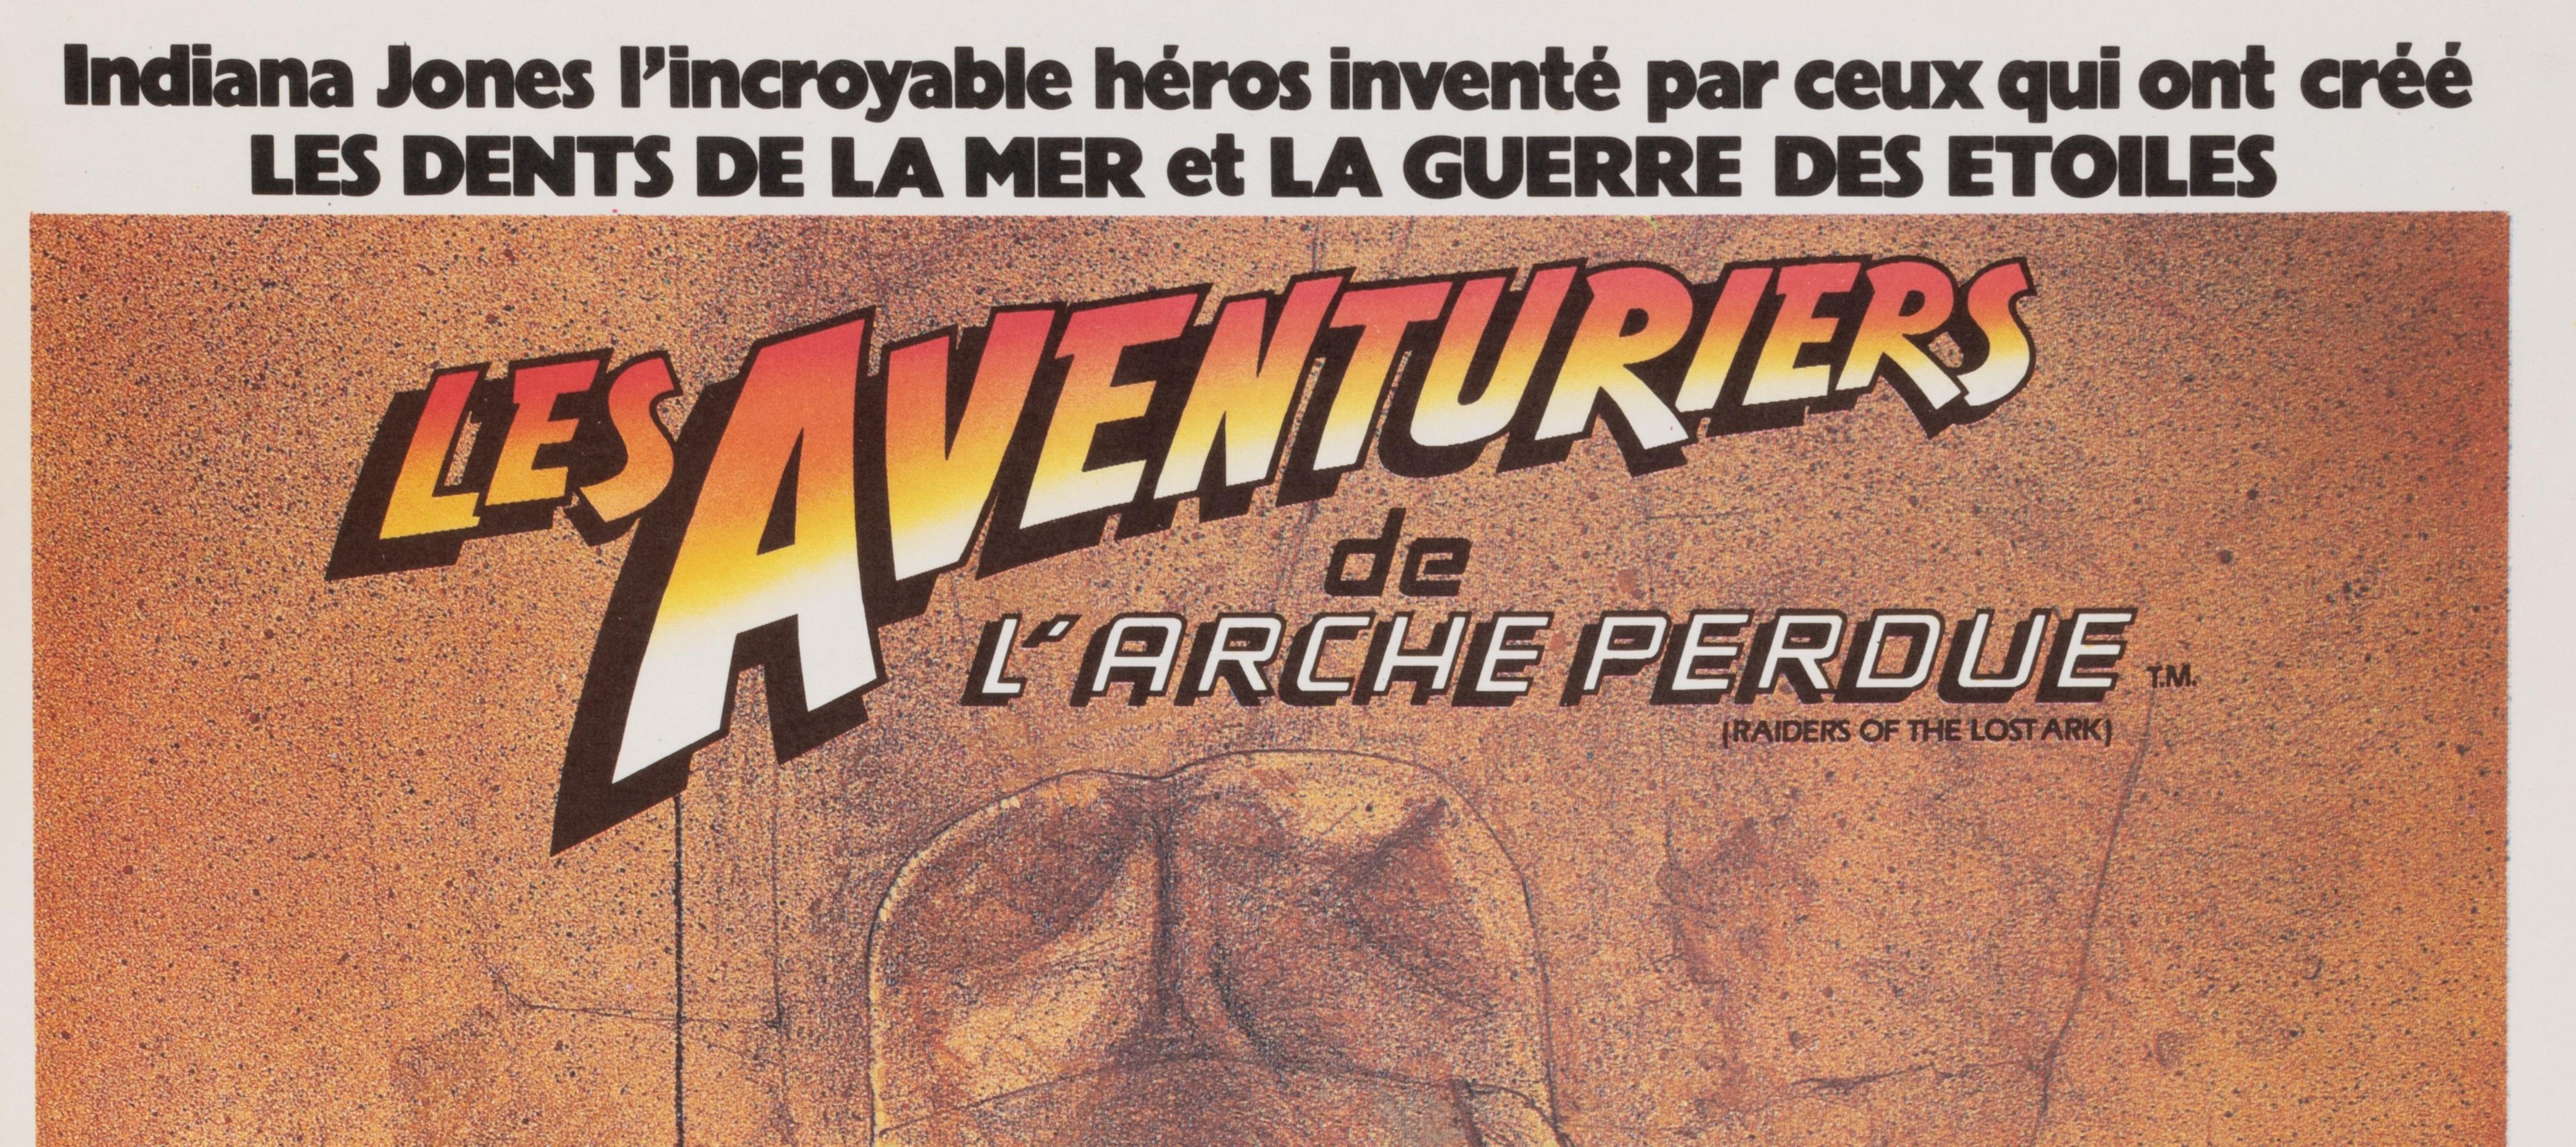 Affiche originale du film Les Aventuriers de l'Arche perdue (Indiana Jones) créée par Amsel vers 1980.

Artistics : Anonyme
Titre : Les aventures de l'arche perdue
Date : 1981
Taille (l x h) : 15.1 x 21.1 in / 38.3 x 53.6 cm
Imprimante : Ste EXPL .